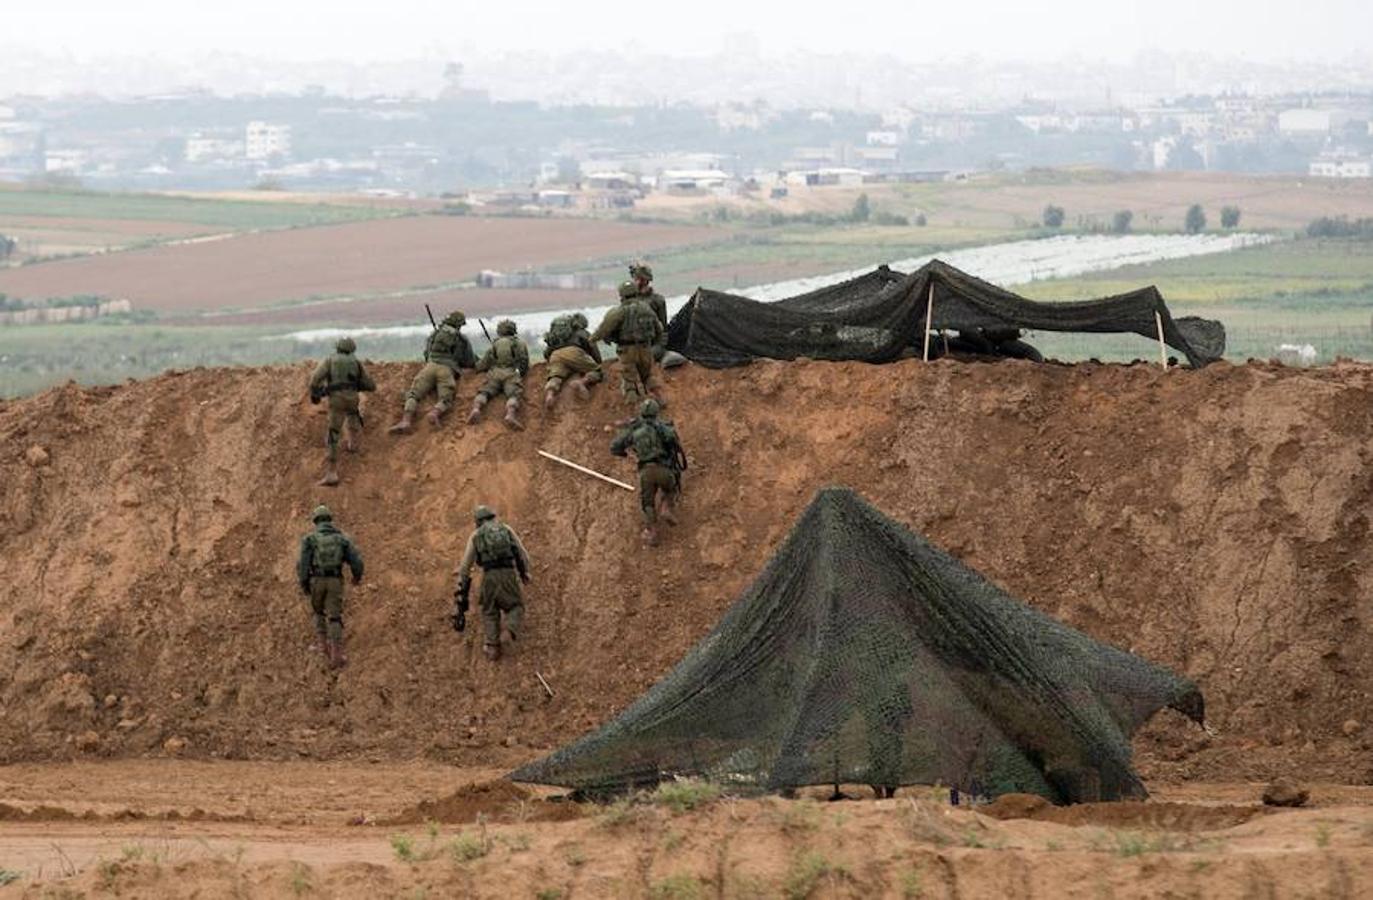 El ejército israelí se encuentra en alerta por lo que se han desplegado tropas por la frontera con motivo del Día de la Tierra que se celebra hoy en Palestina. 